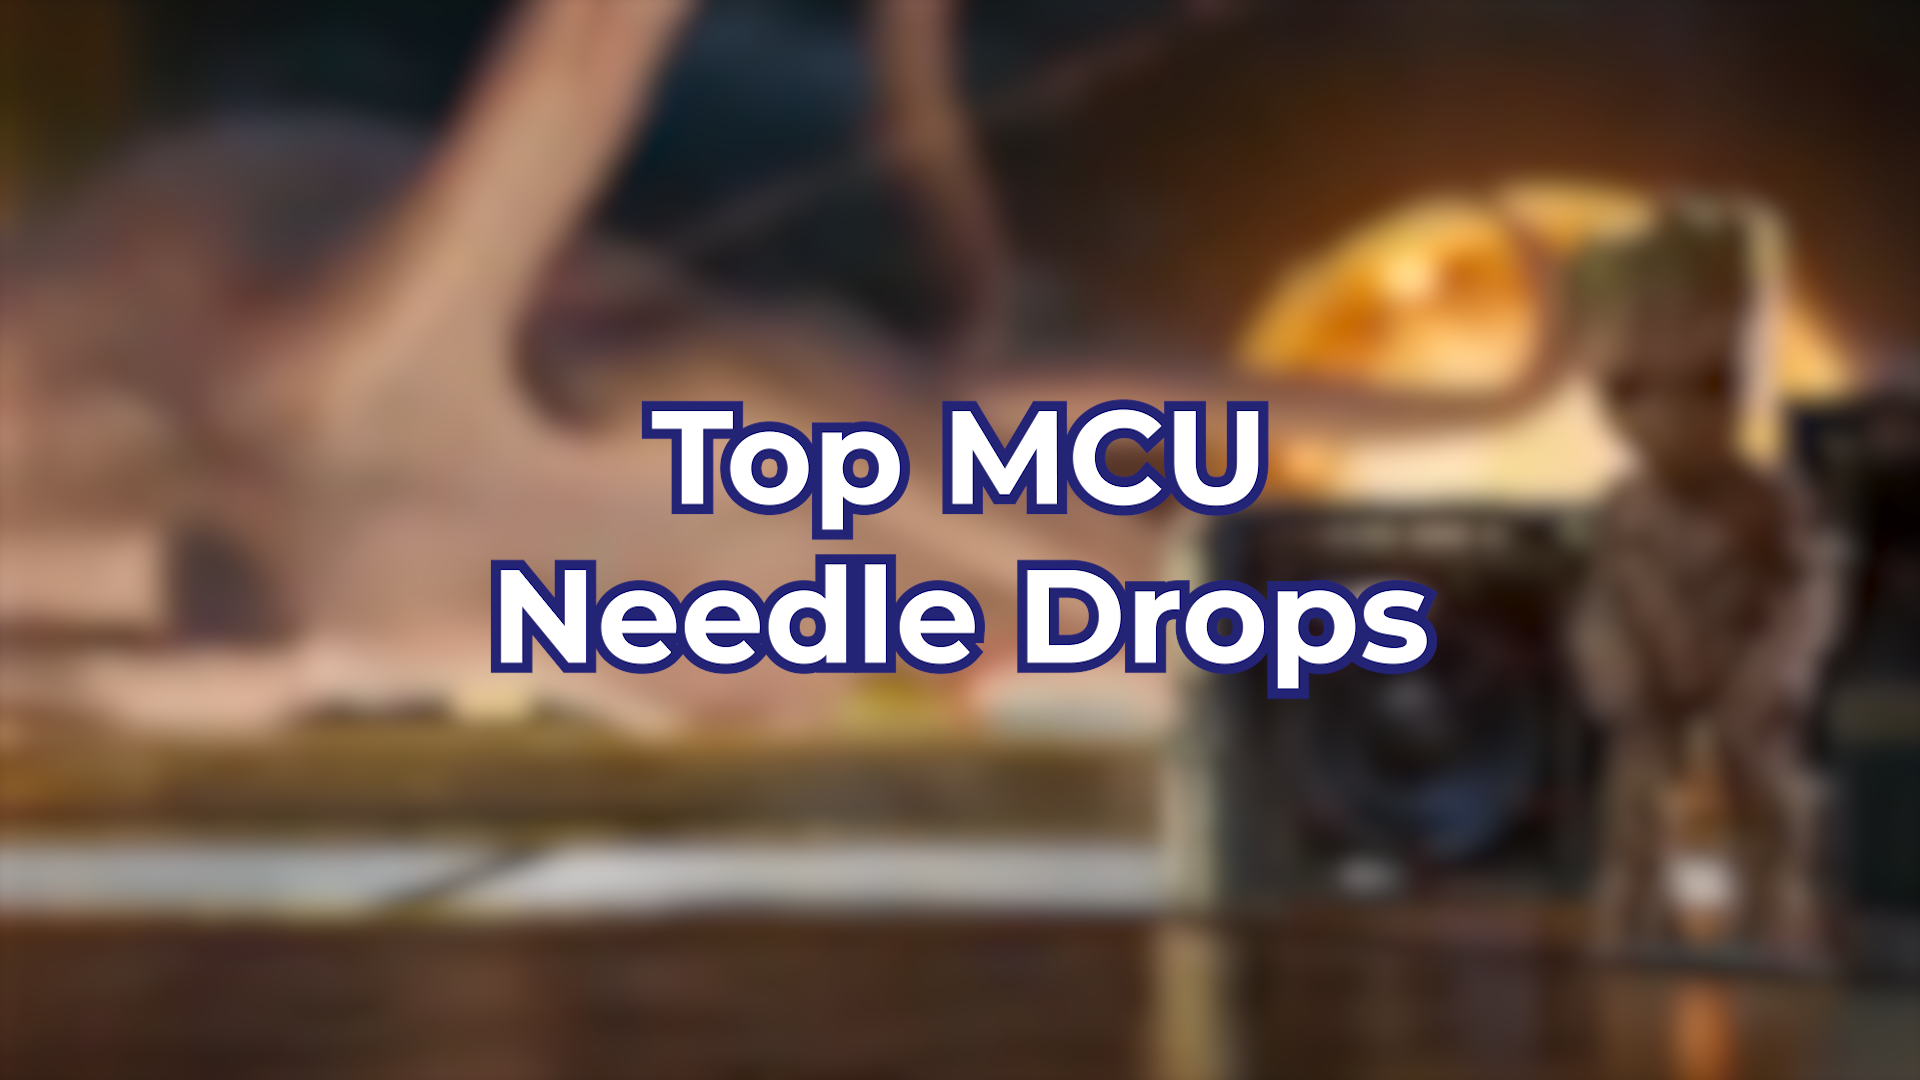 Top MCU Needle Drops